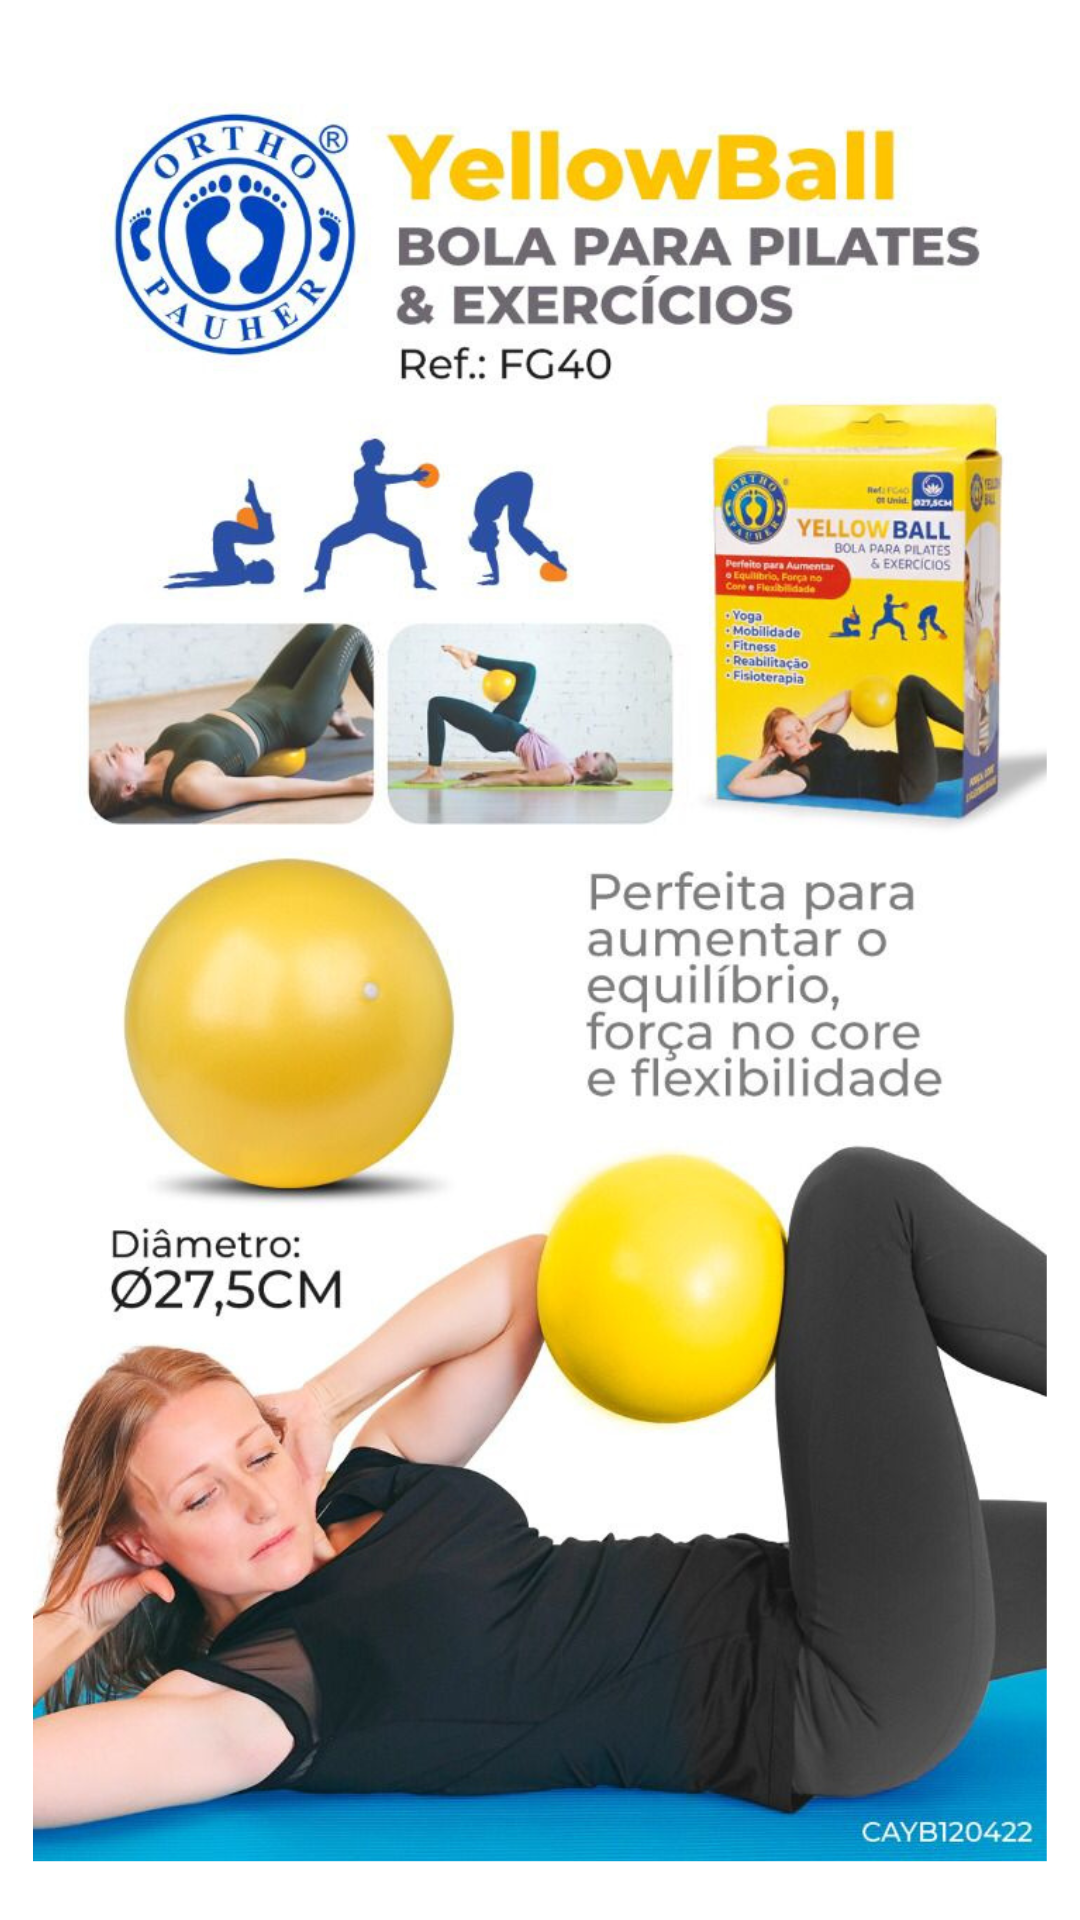 Yellow Ball - Bola para Pilates e Exercícios